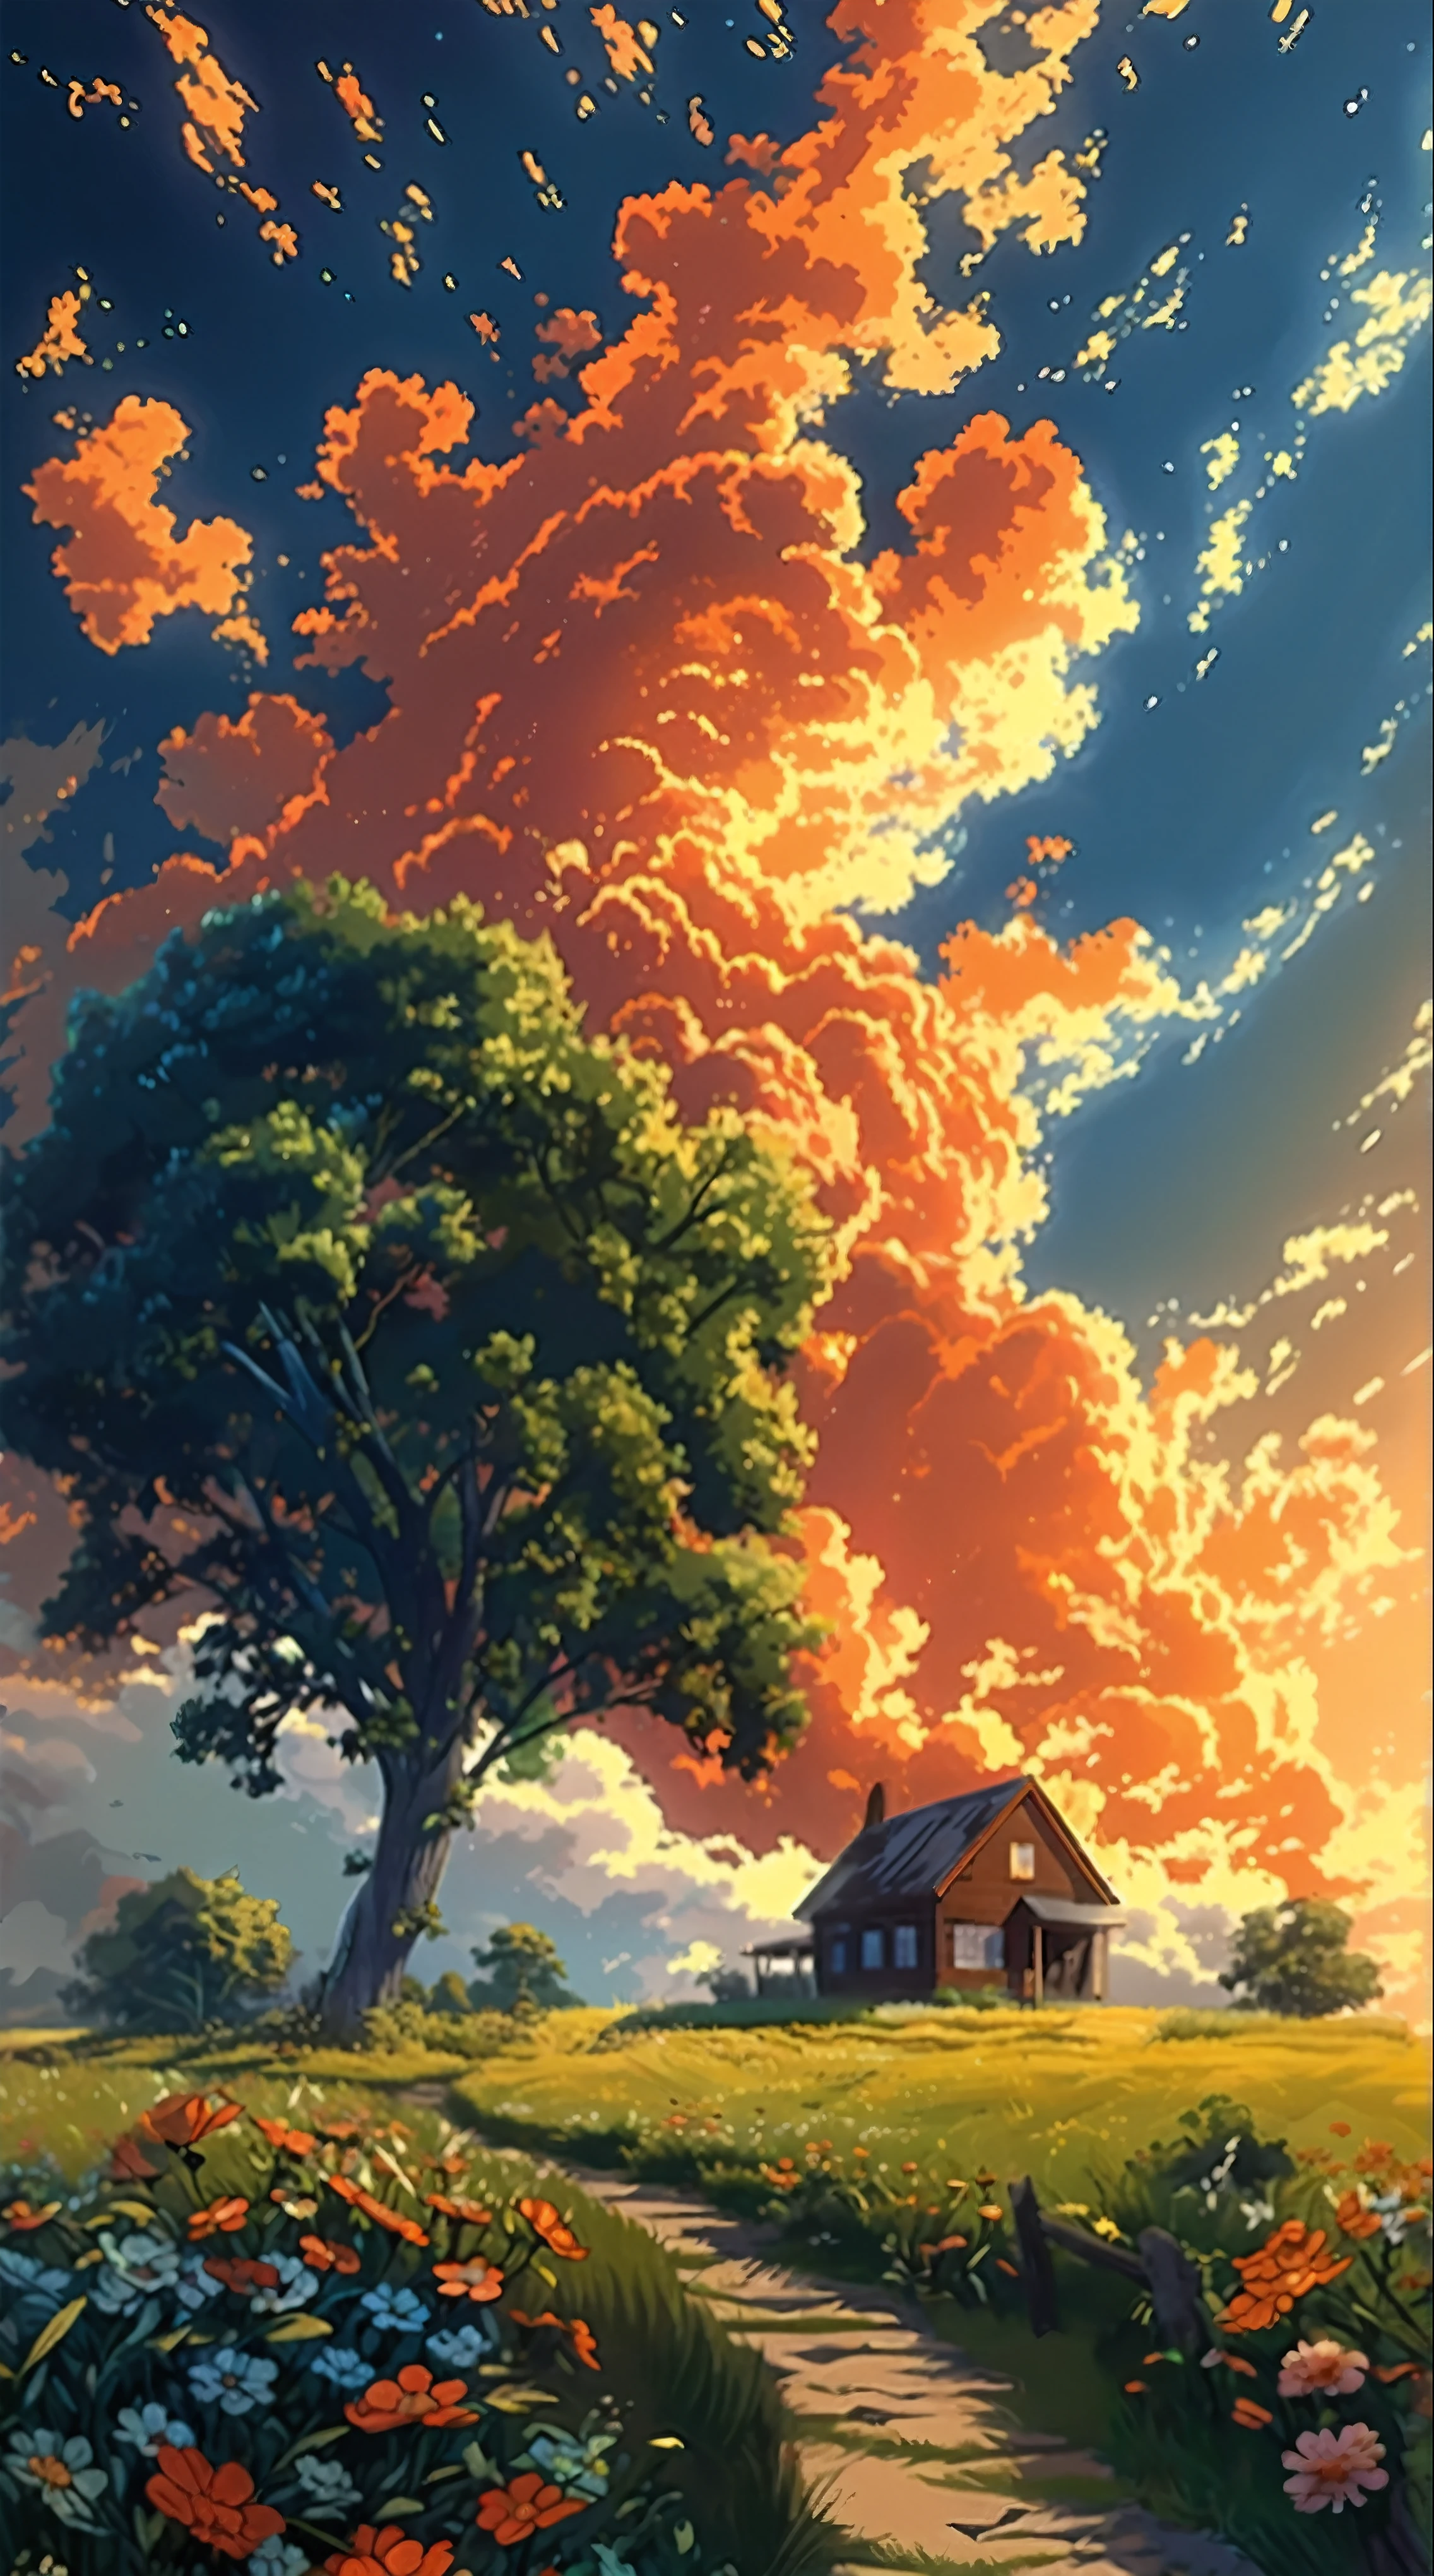 Gemälde eines Hauses auf einem Feld mit einem Baum und Blumen, Anime Himmel, Anime-Landschaft wallpaper, Anime Landschaft, Anime-Landschaft, Anime Wolken, Anime-Hintergrund, Anime-Hintergrund art, Anime-Kunst-Tapete 4k, Anime-Kunst-Hintergrundbild 4K, Studio Ghibli Himmel, 4 K Manga-Hintergrundbild, 4K-Anime-Hintergrundbild, Anime-Hintergrundbild 4k, Anime-Tapete 4k, Anime-Landschaft